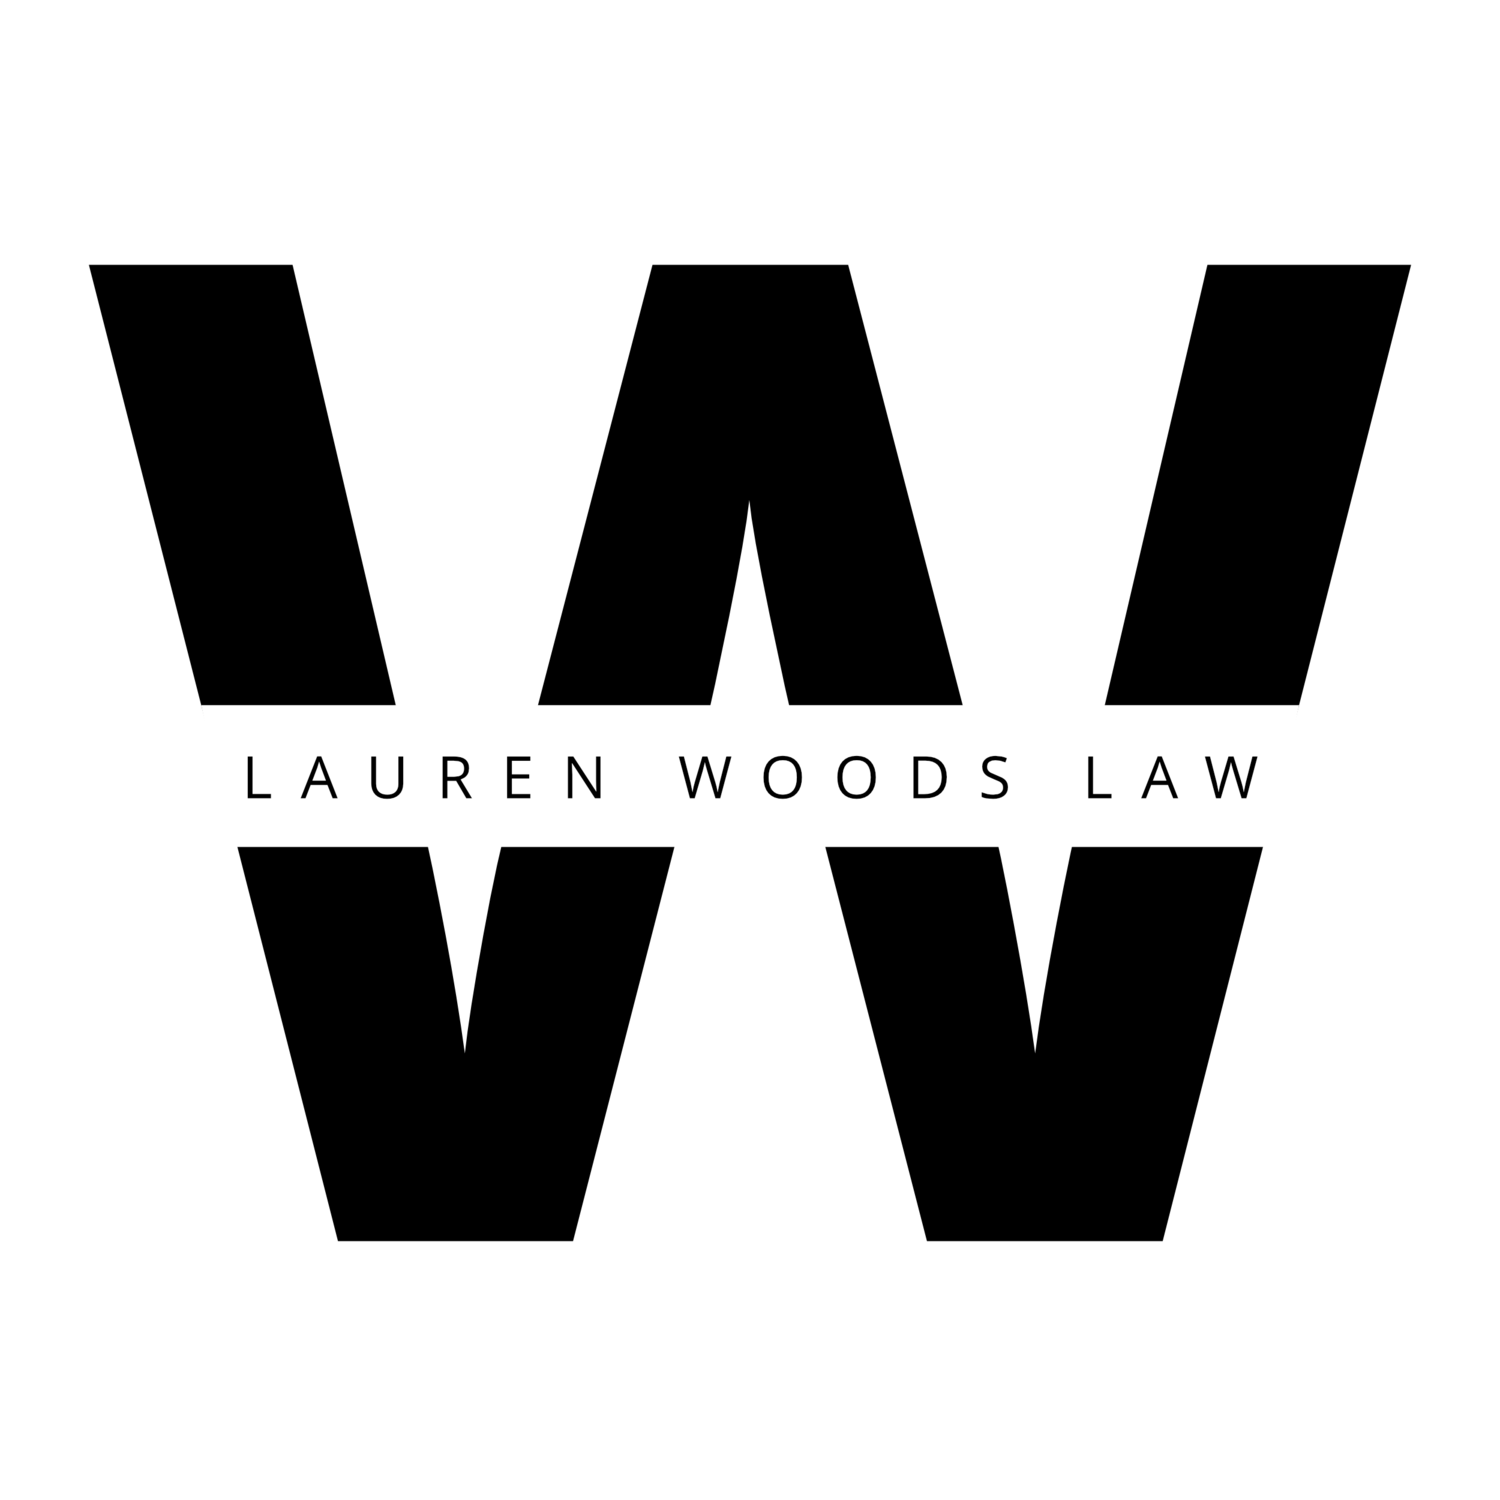 Lauren Woods Law